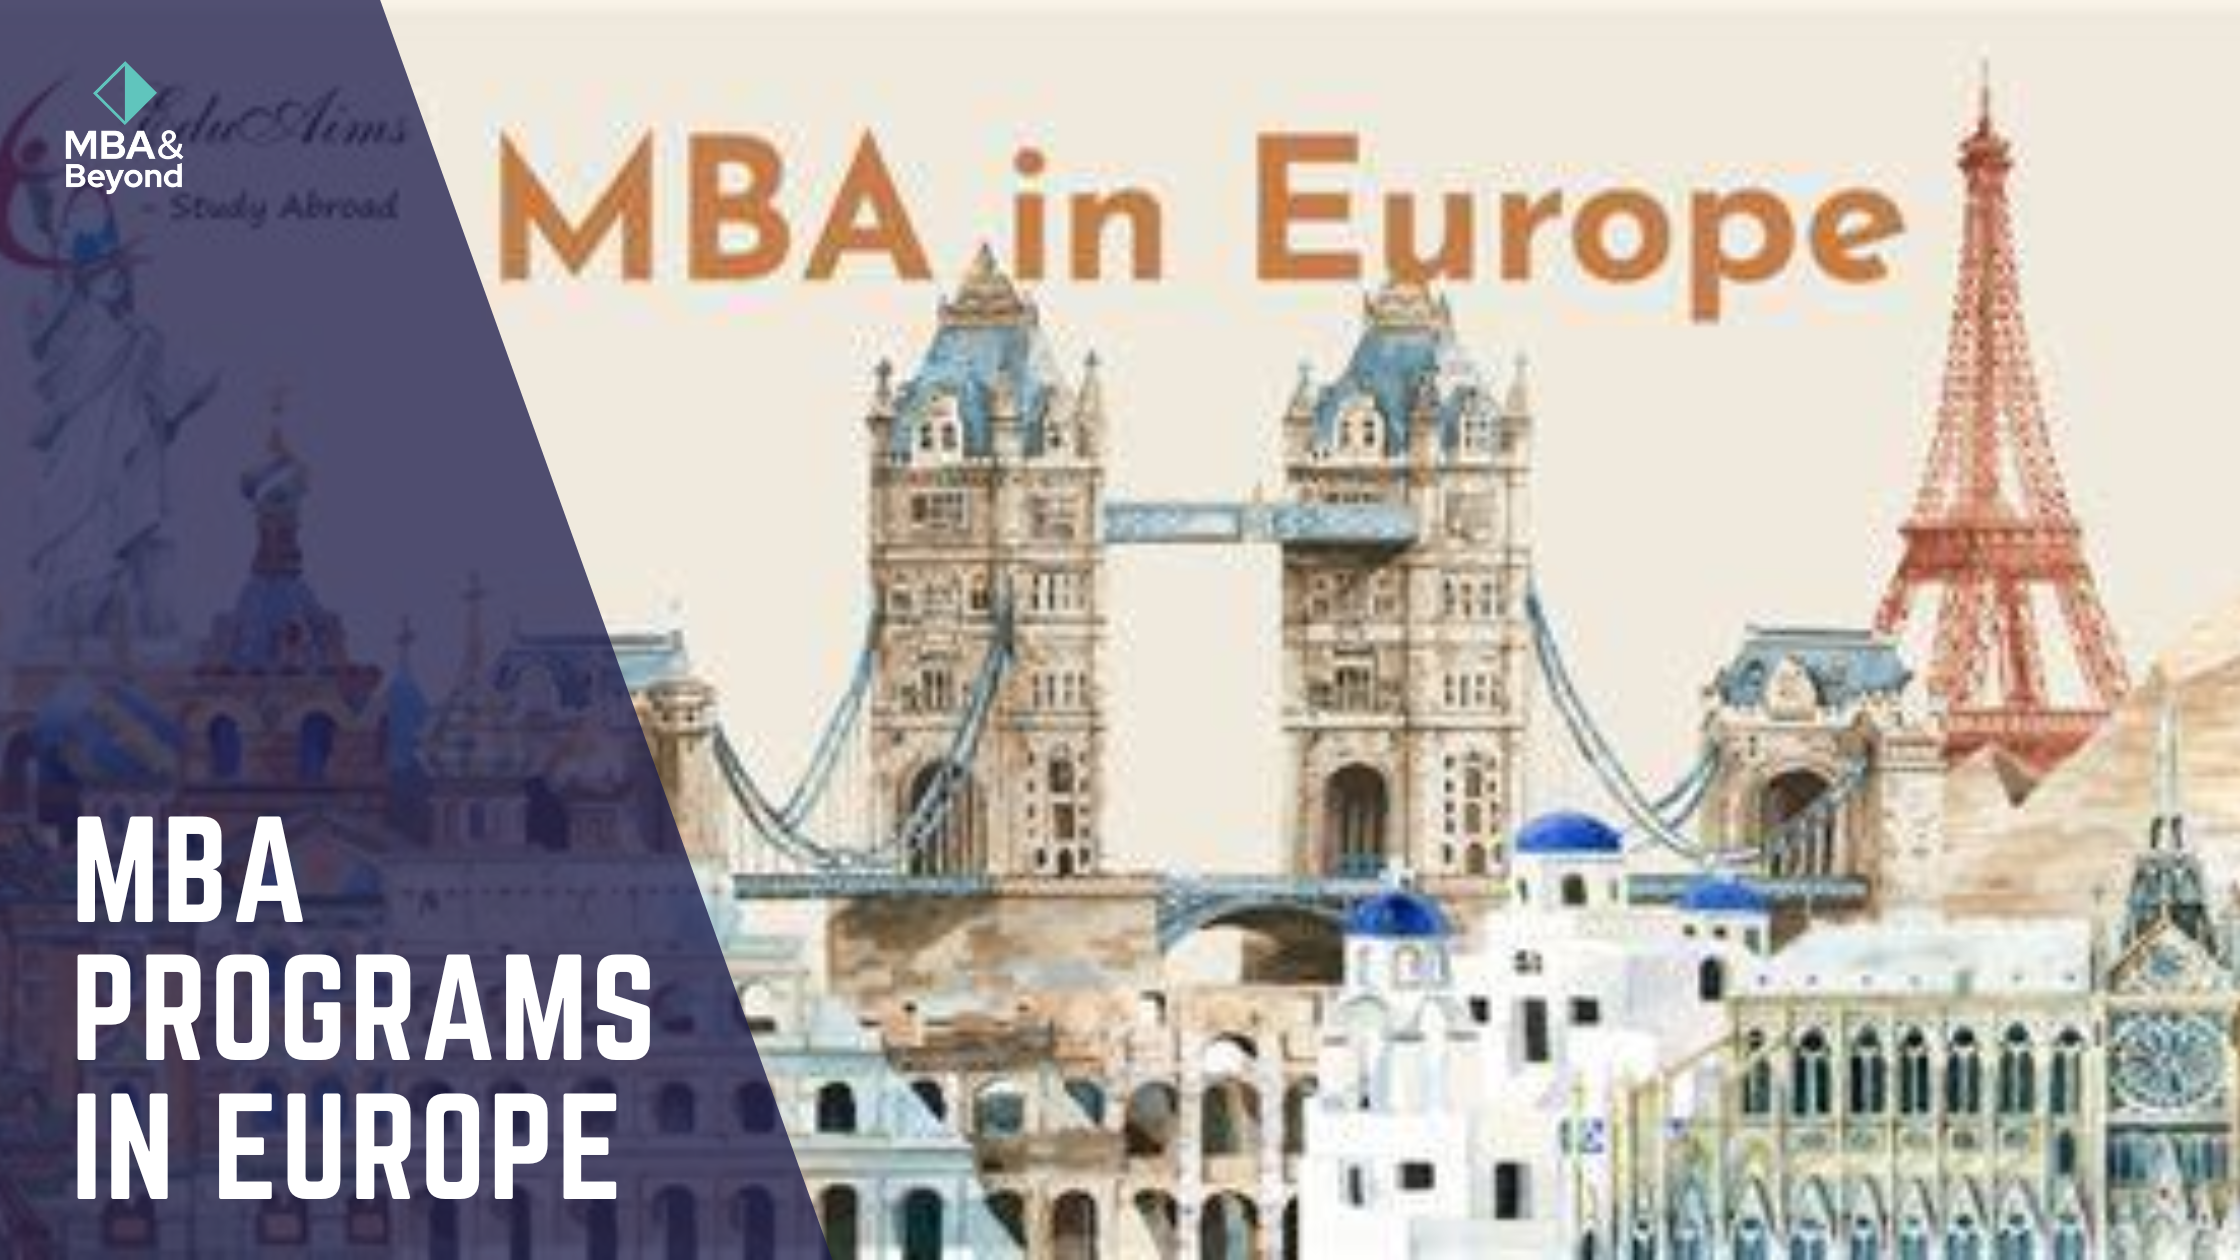 BEST MBA PROGRAMS IN EUROPE